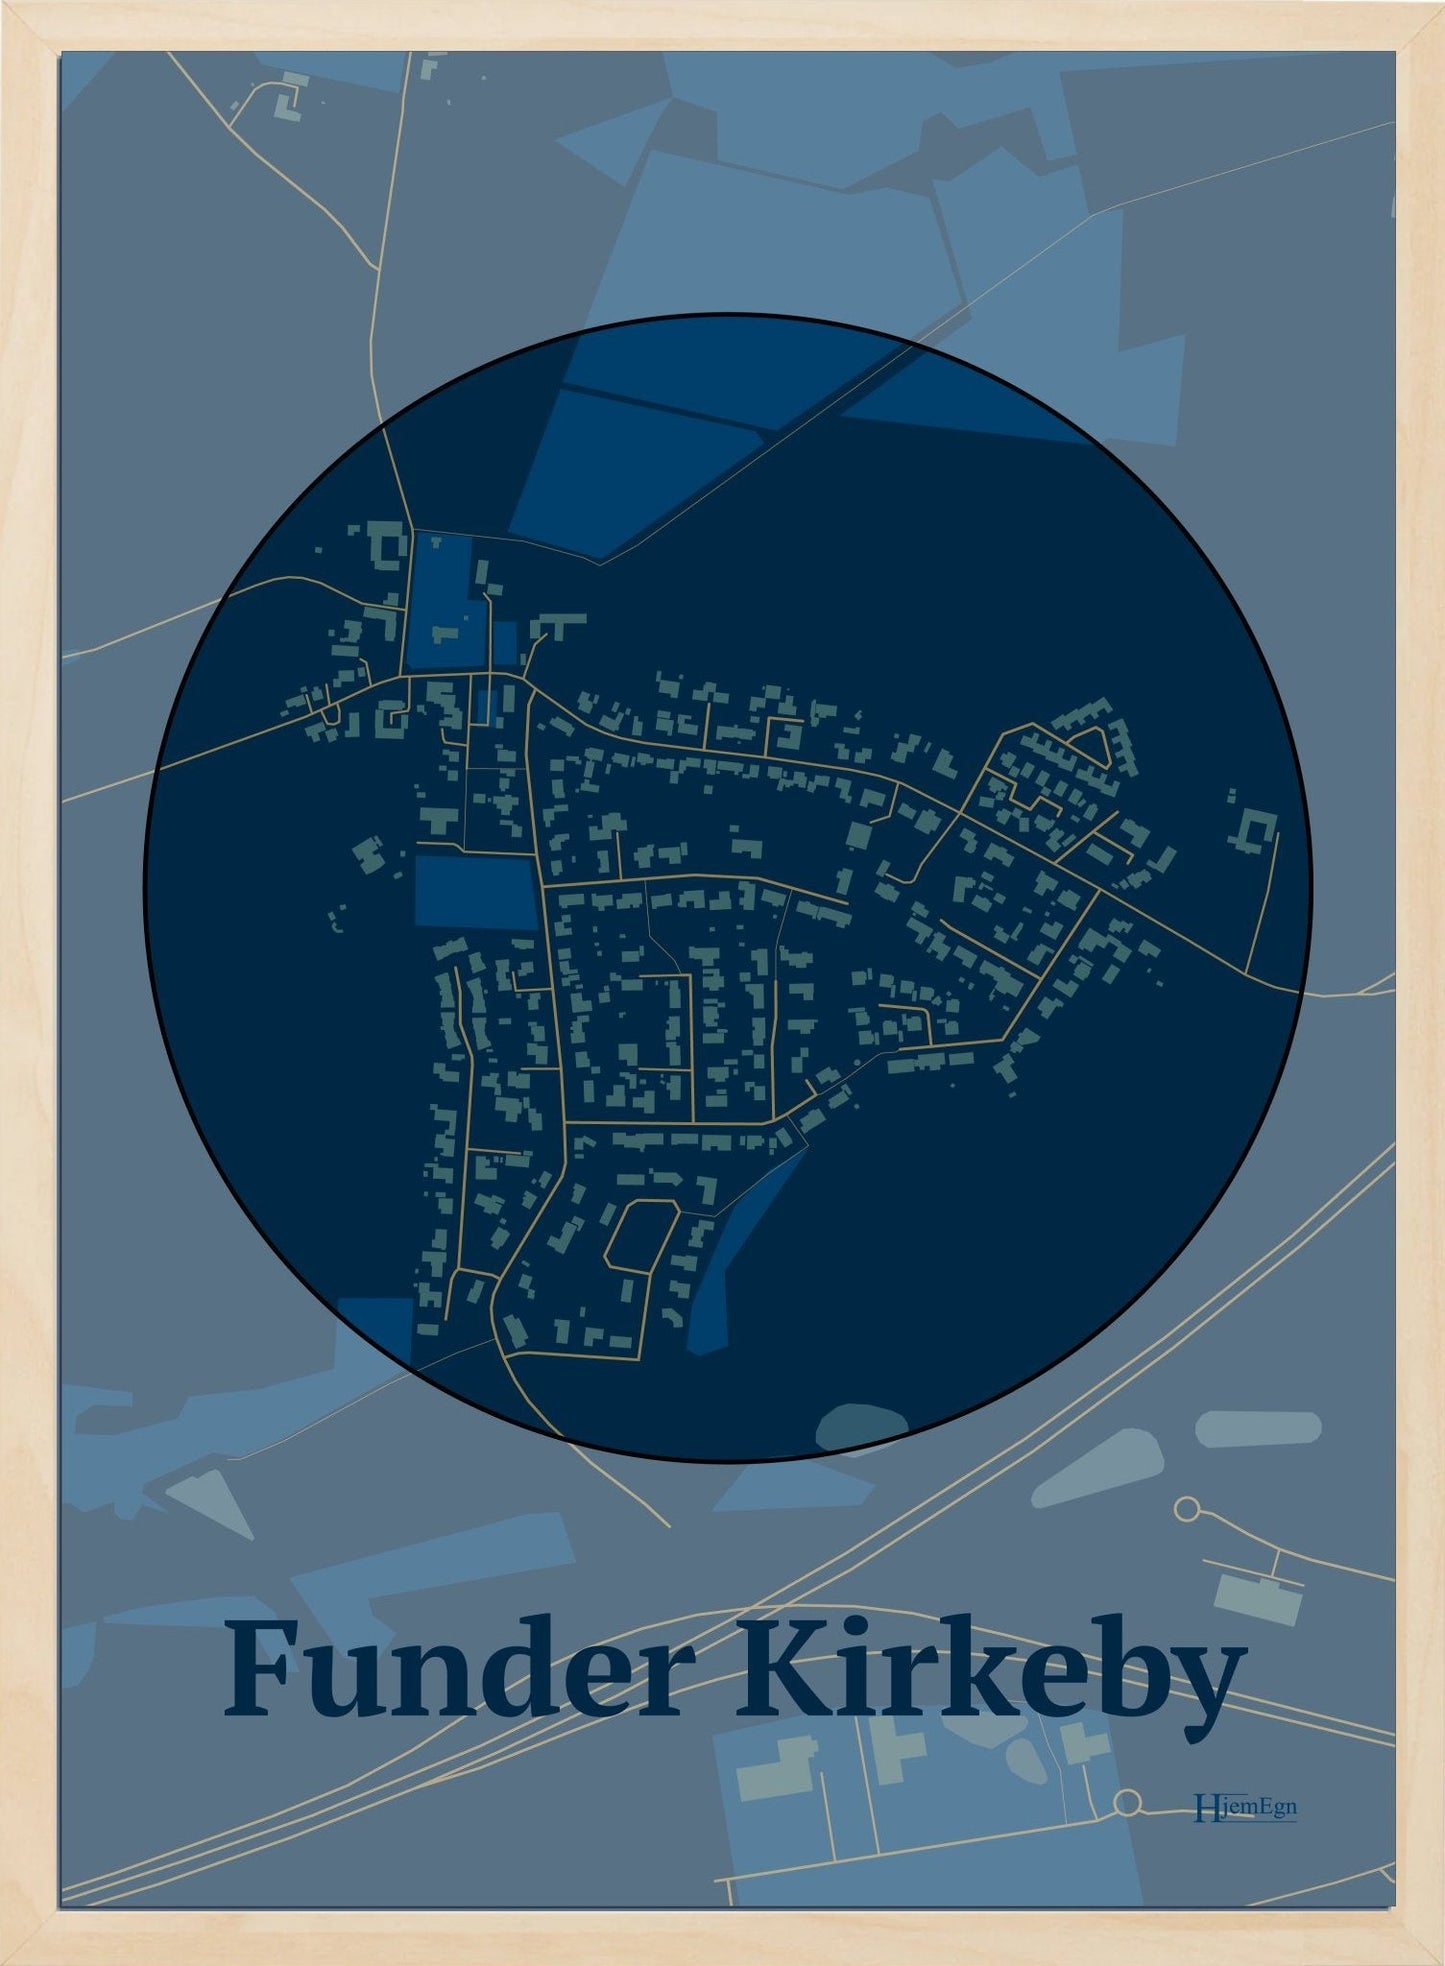 Funder Kirkeby plakat i farve mørk blå og HjemEgn.dk design centrum. Design bykort for Funder Kirkeby